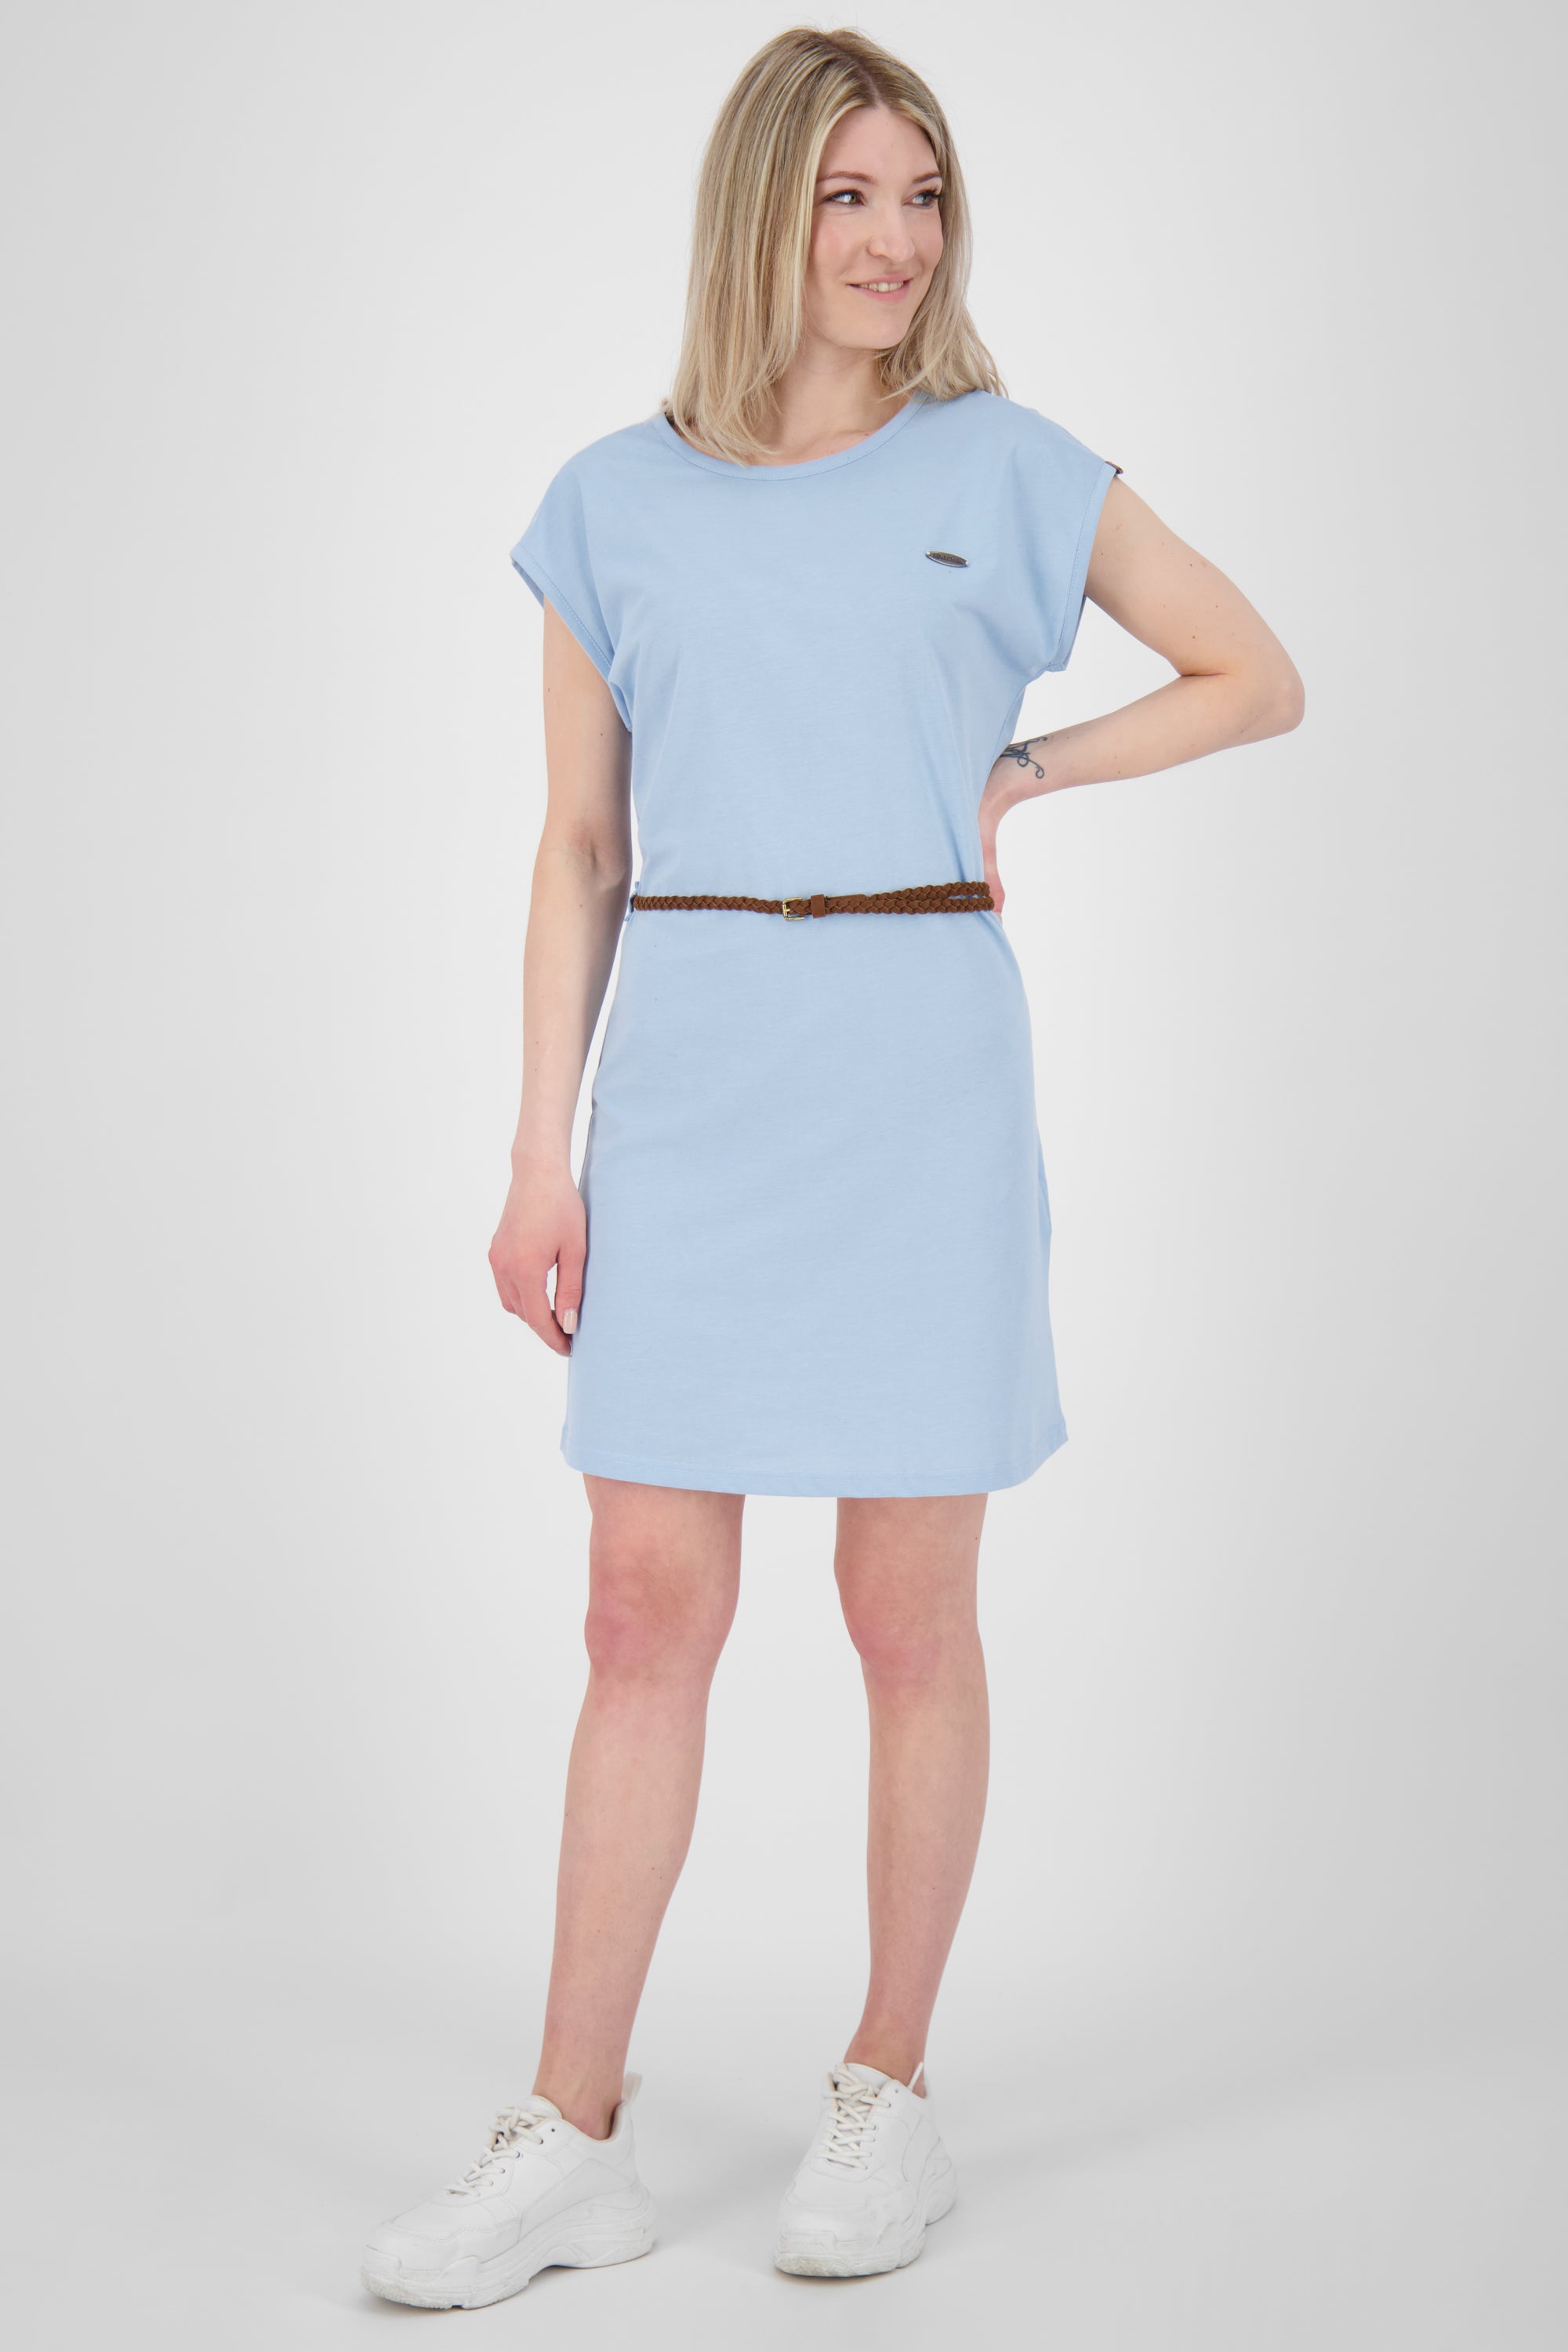 Damen Freizeitkleid ElliAK A - Weiche Jerseyqualität mit figurbetonter Passform Blau